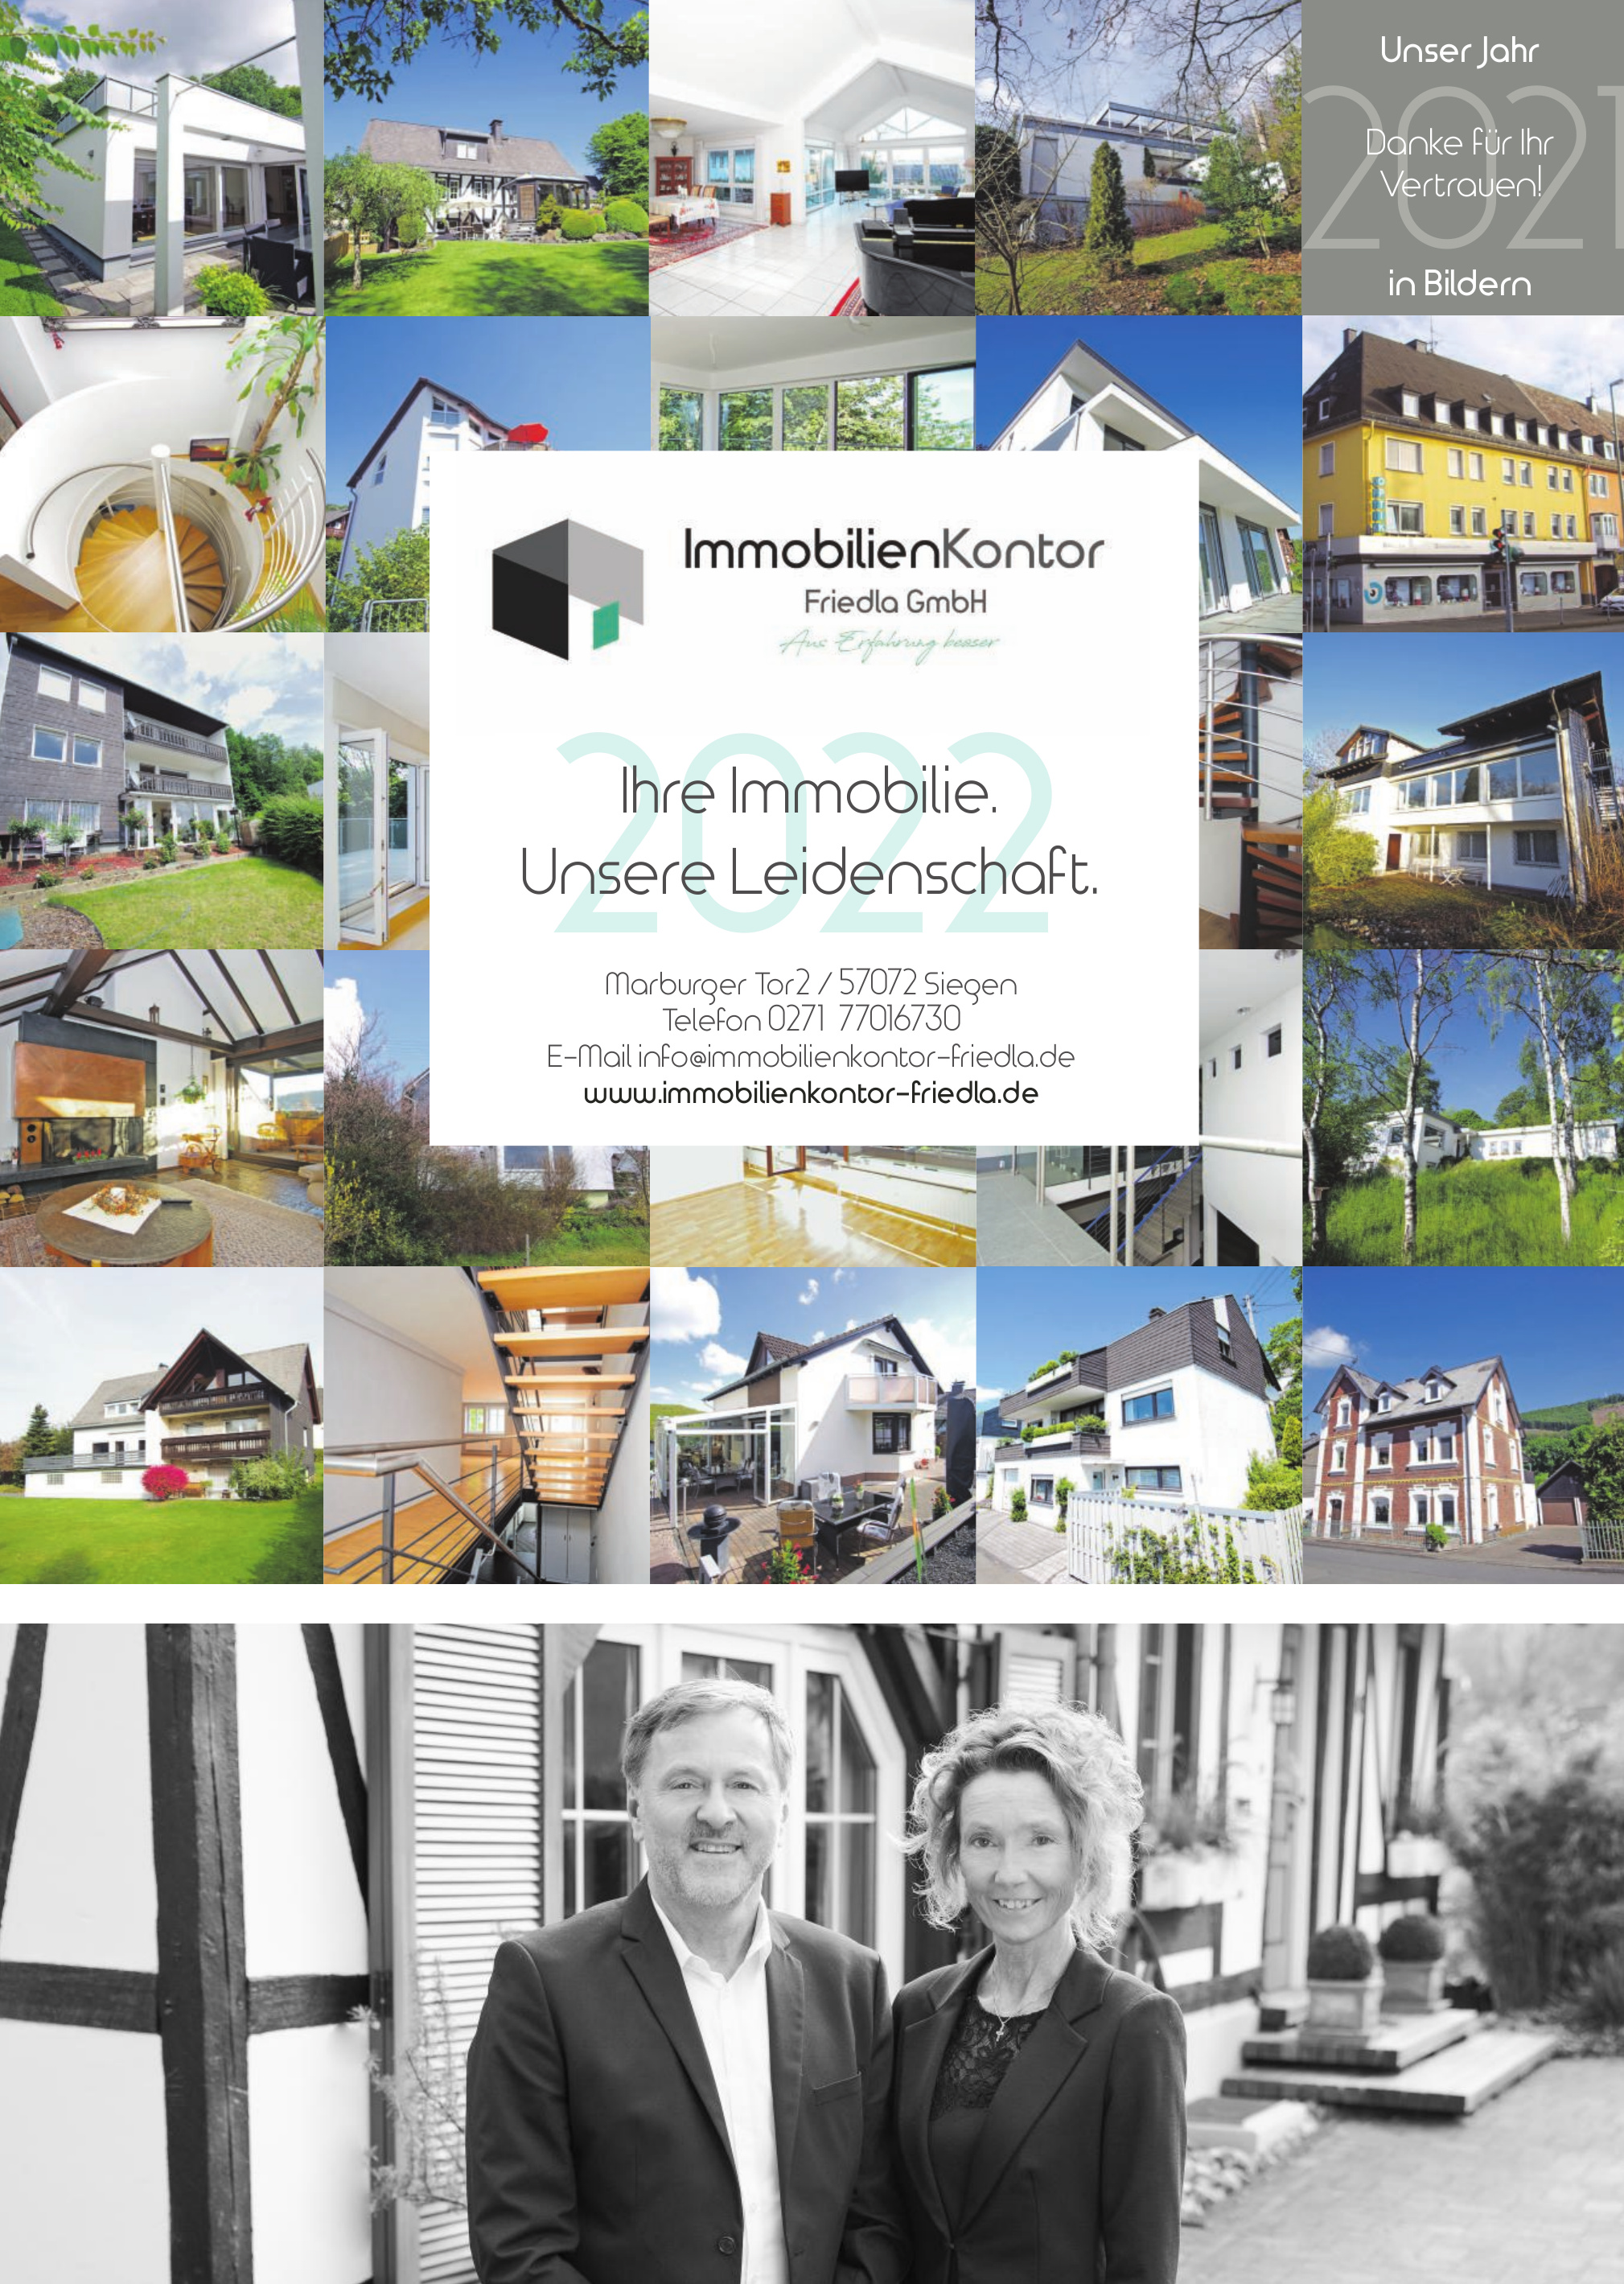 ImmobilienKontor Friedla GmbH